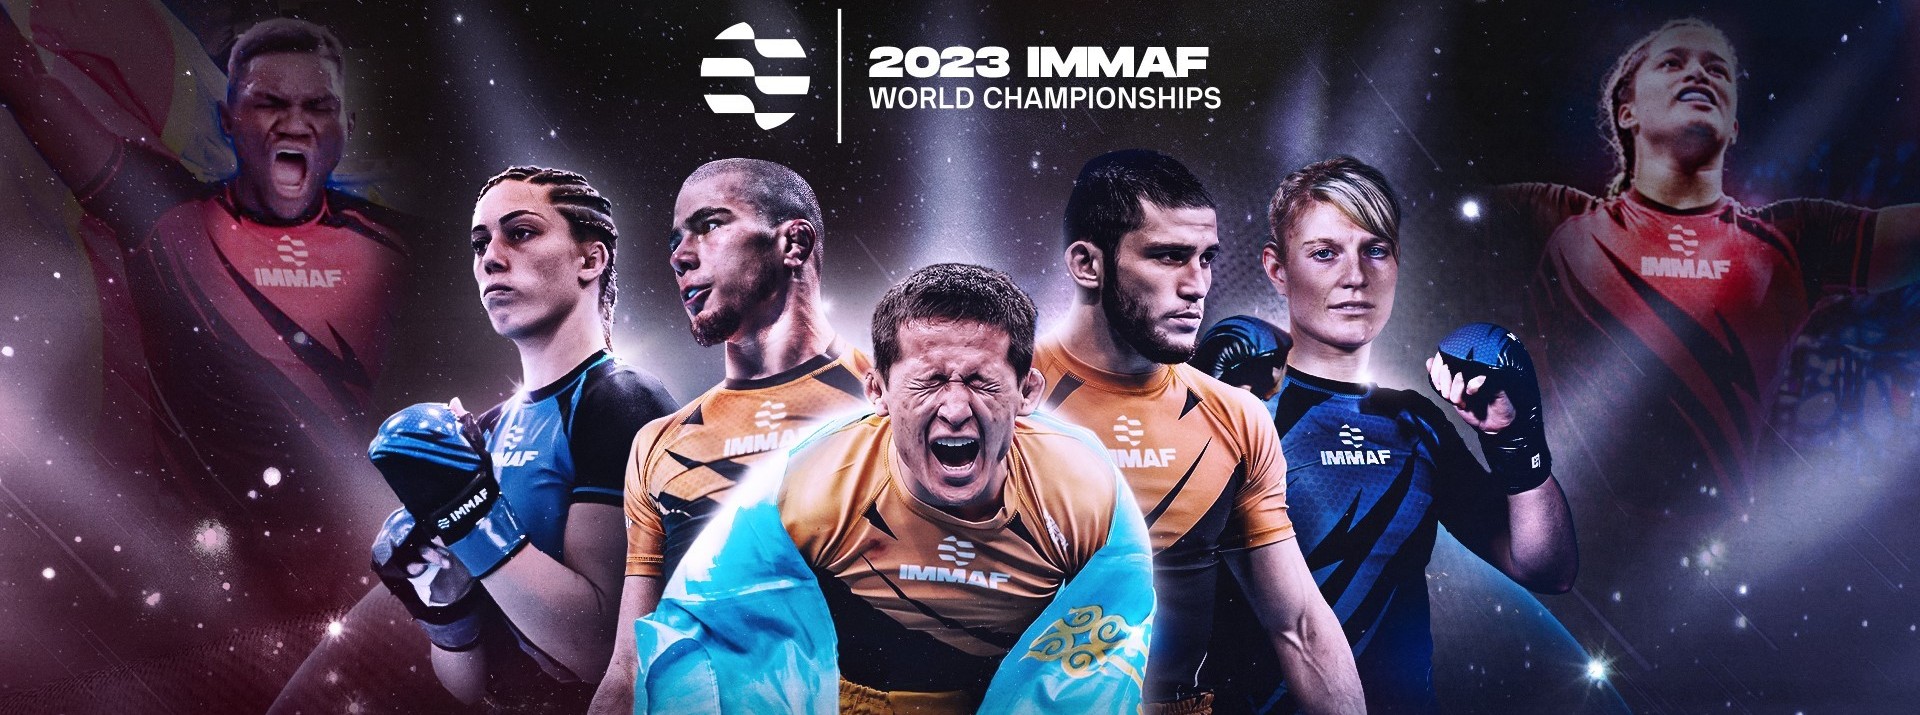 2023 IMMAF World Championships - Smoothcomp